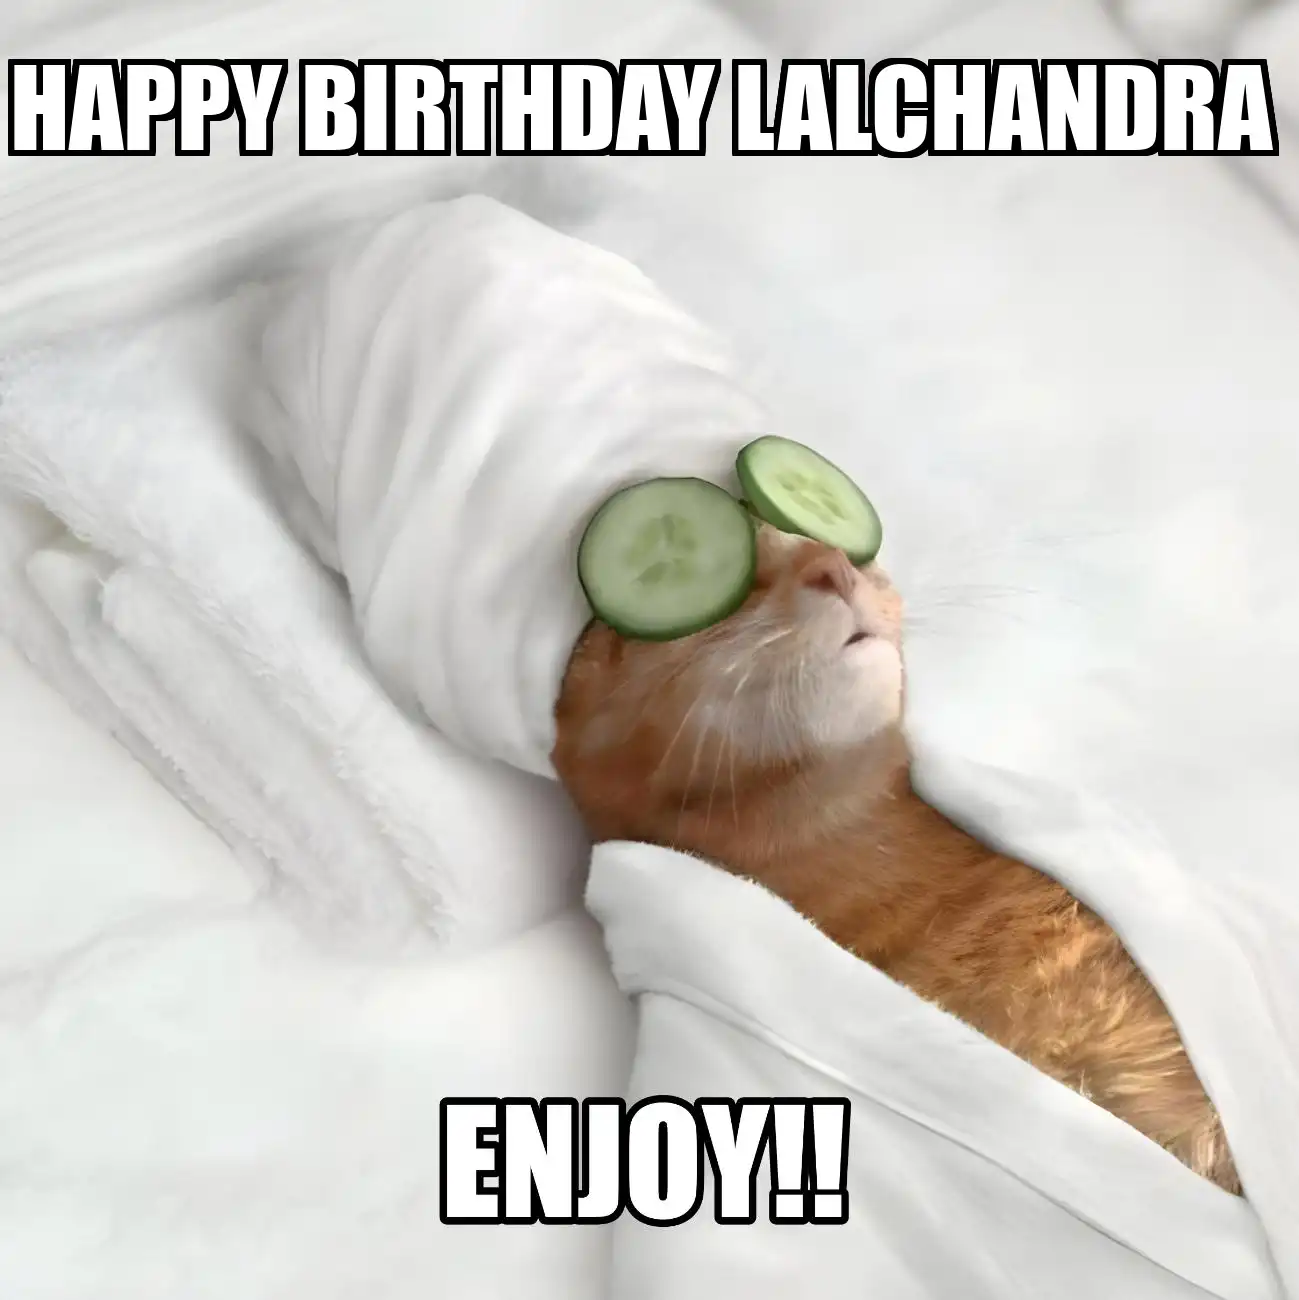 Happy Birthday Lalchandra Enjoy Cat Meme